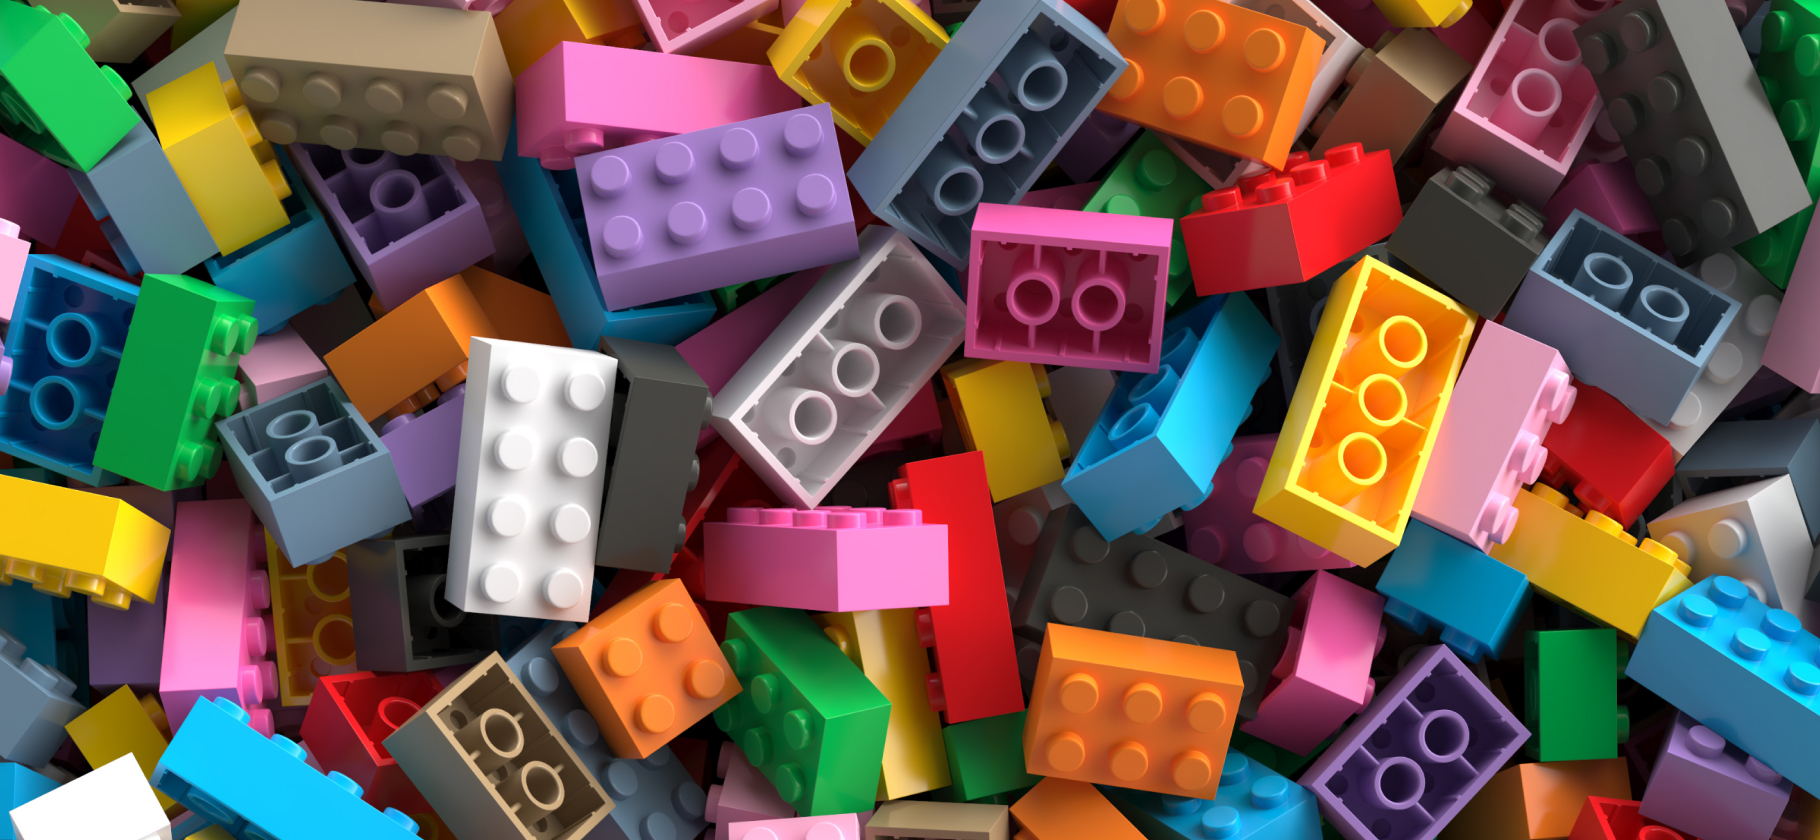 Любите «Лего»? Покажите любимый набор и расскажите о нем